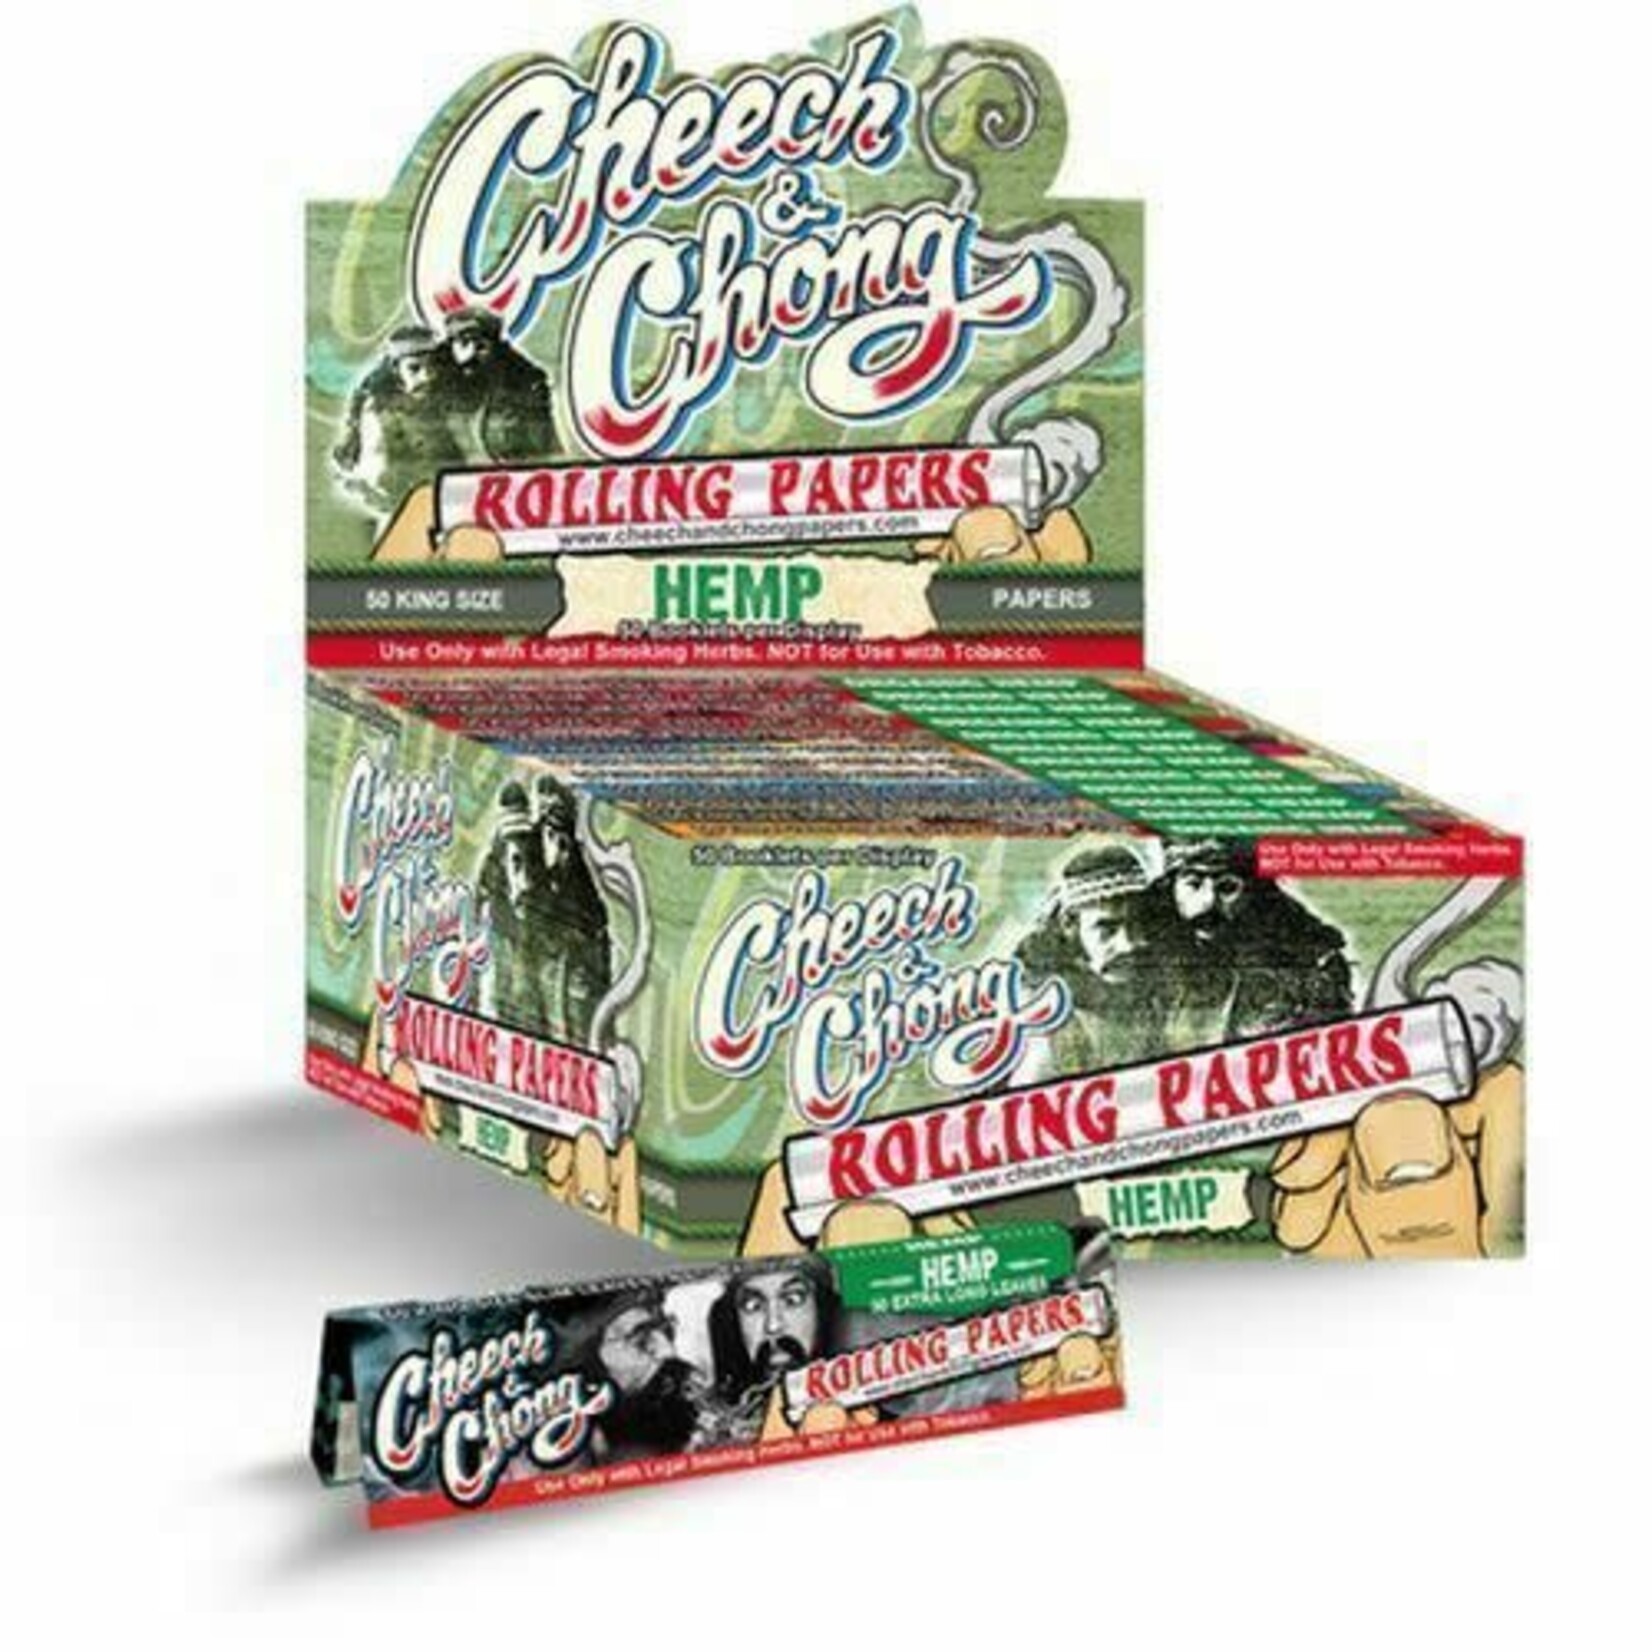 Cheech & Chong Cheech & Chong Rolling Papers